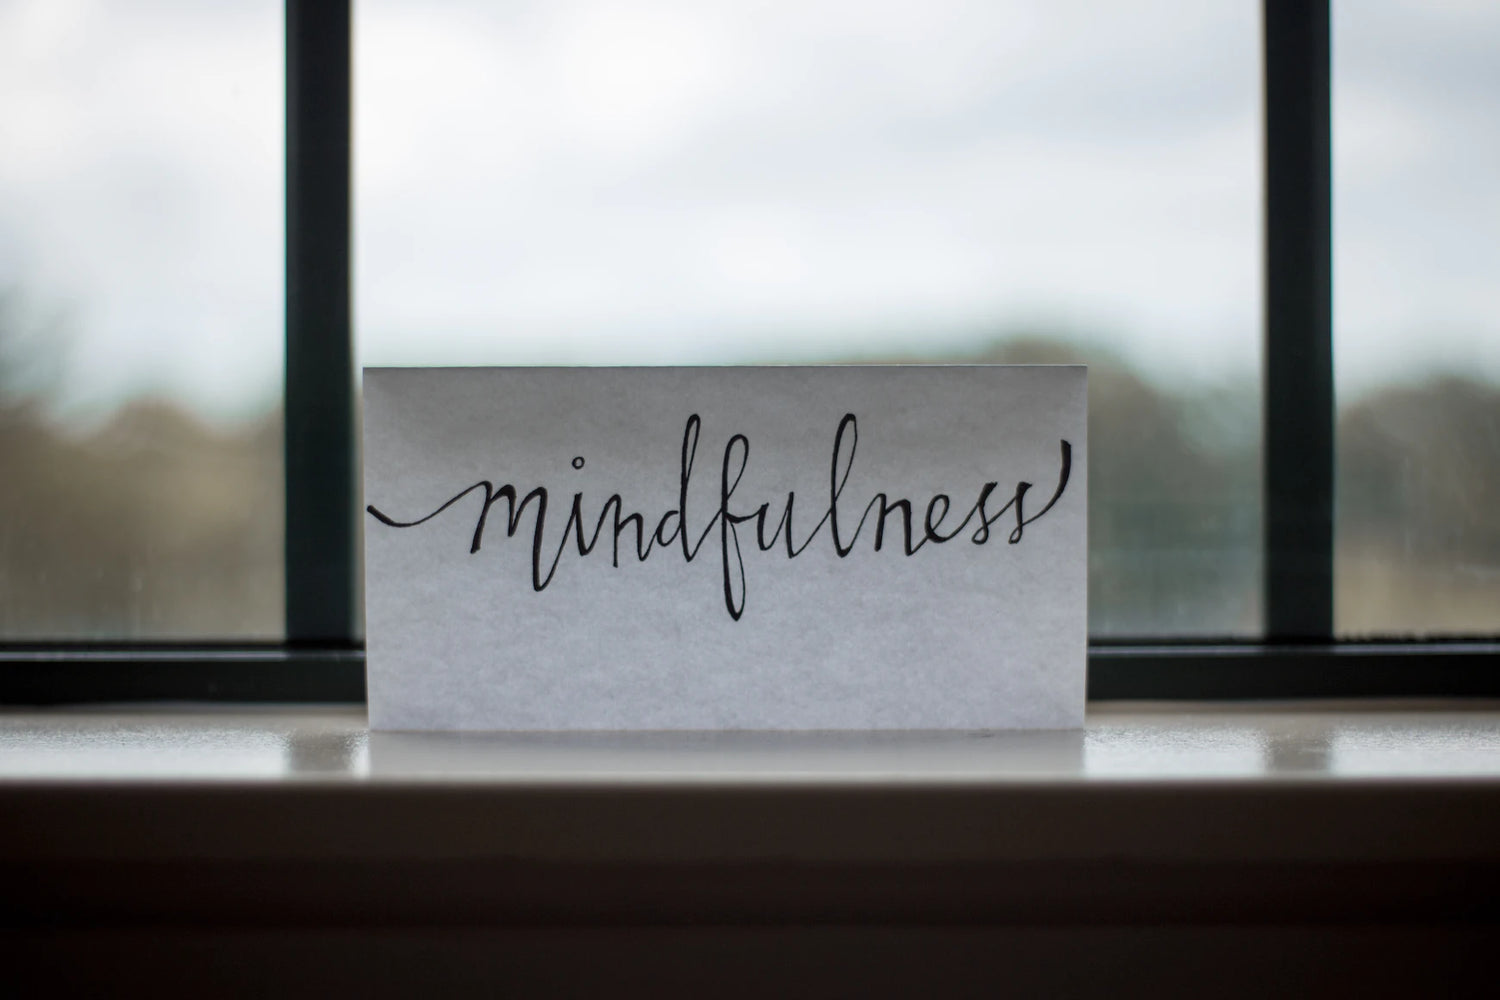 Ein Zettel mit der Aufschrift "mindfulness" steht auf einem Fensterbrett